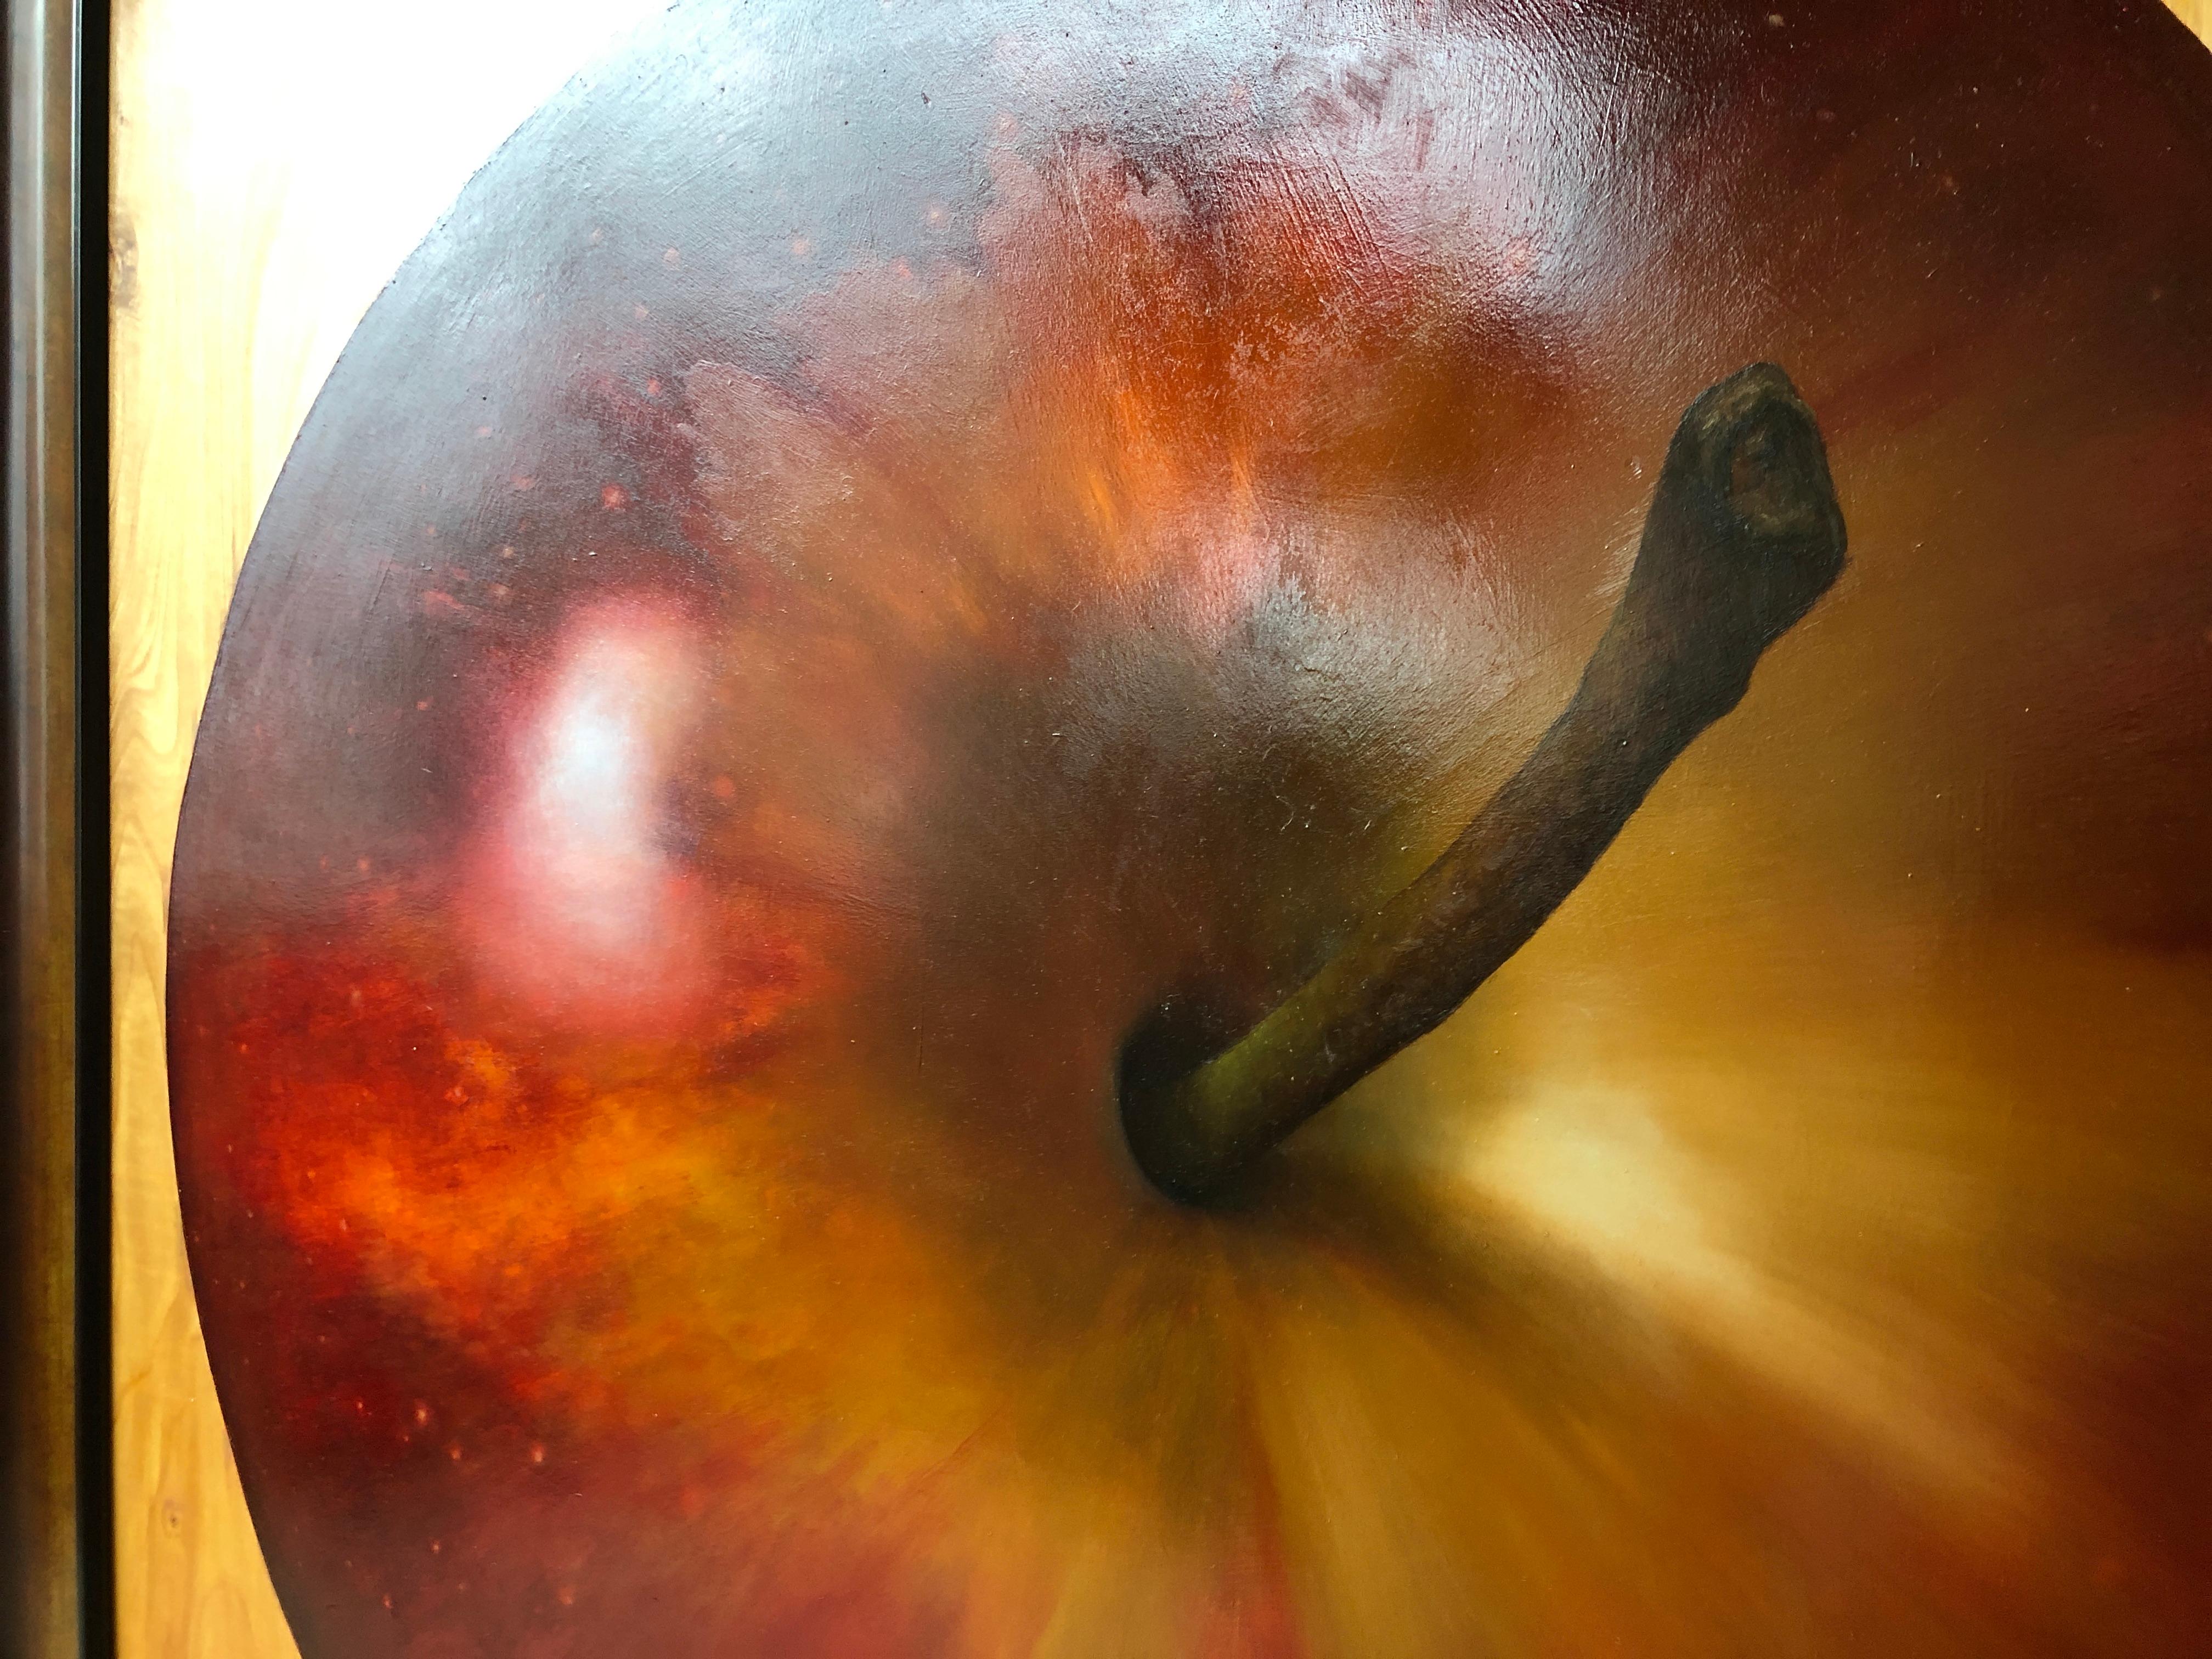 Eine wunderschön ausgeführte, überdimensionale,  trompe l'oeil Ölgemälde eines Gala-Apfels mit mehreren Ebenen der Ironie. Ein praller, heller, frischer Apfel, hyperrealistisch gemalt. Der leuchtende Gala-Apfel liegt auf der Seite, wobei die